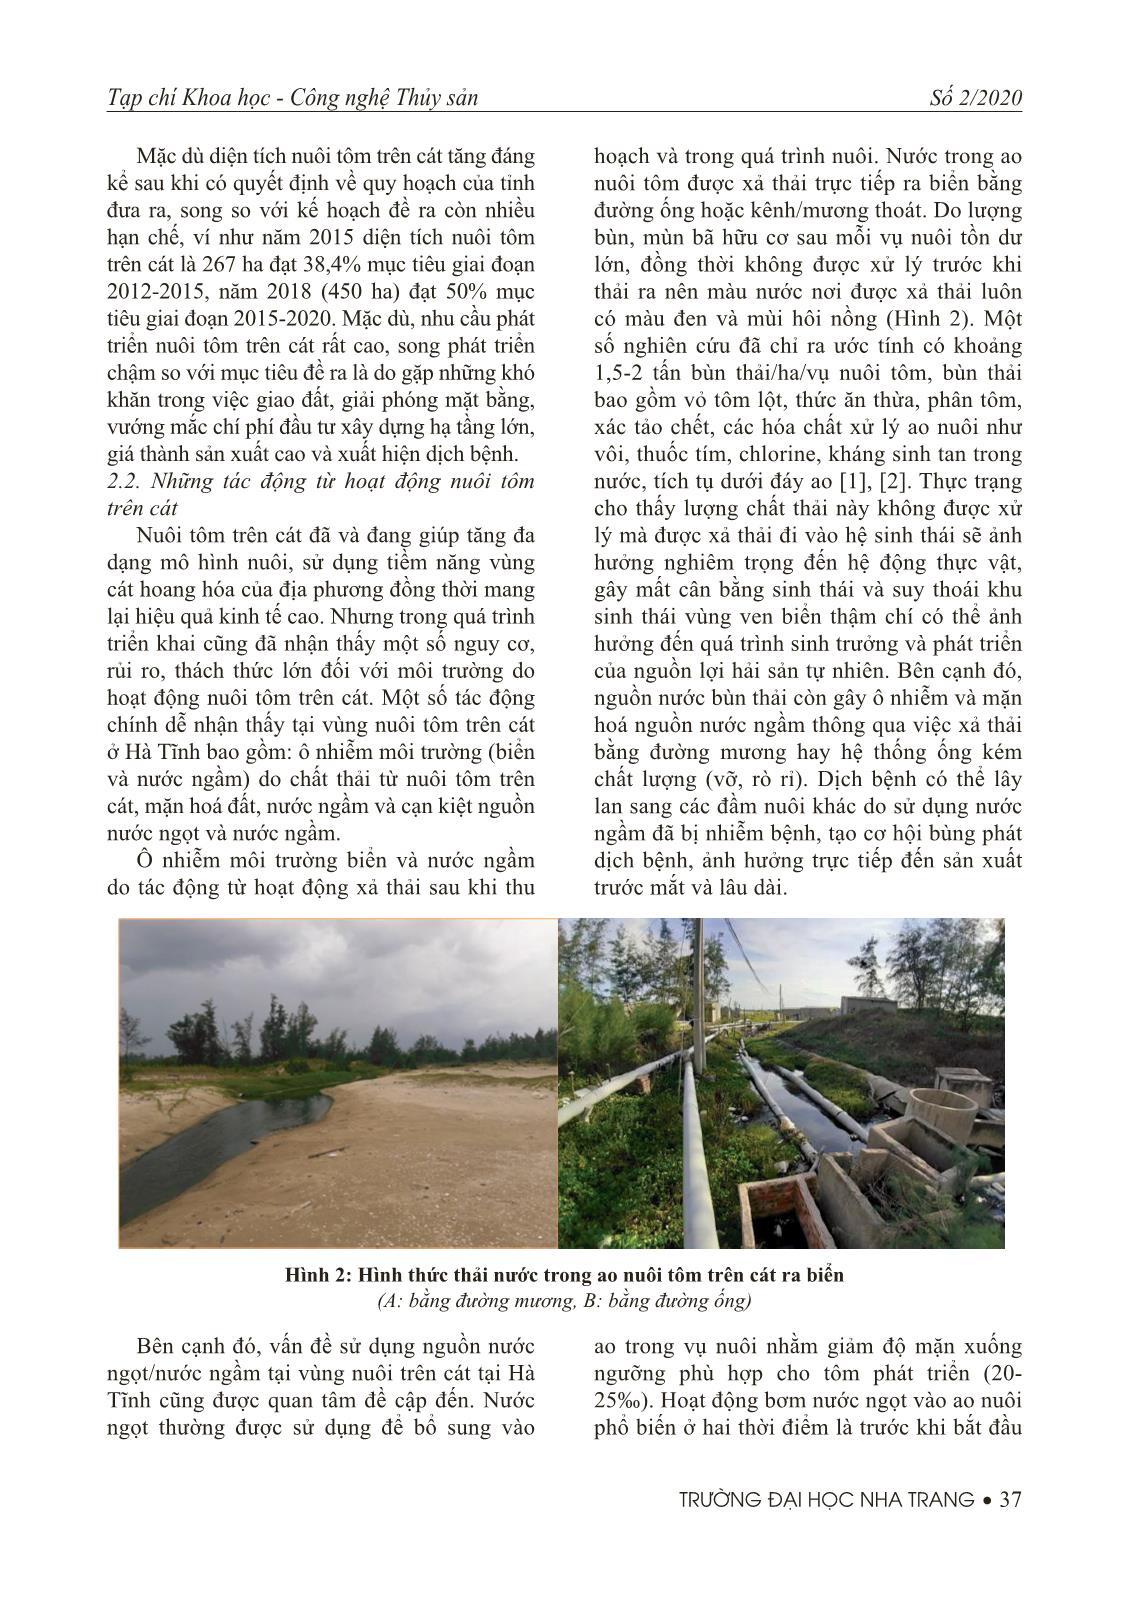 Tiềm năng, thực trạng và giải pháp phát triển nuôi tôm trên cát ở tỉnh Hà Tĩnh trang 4